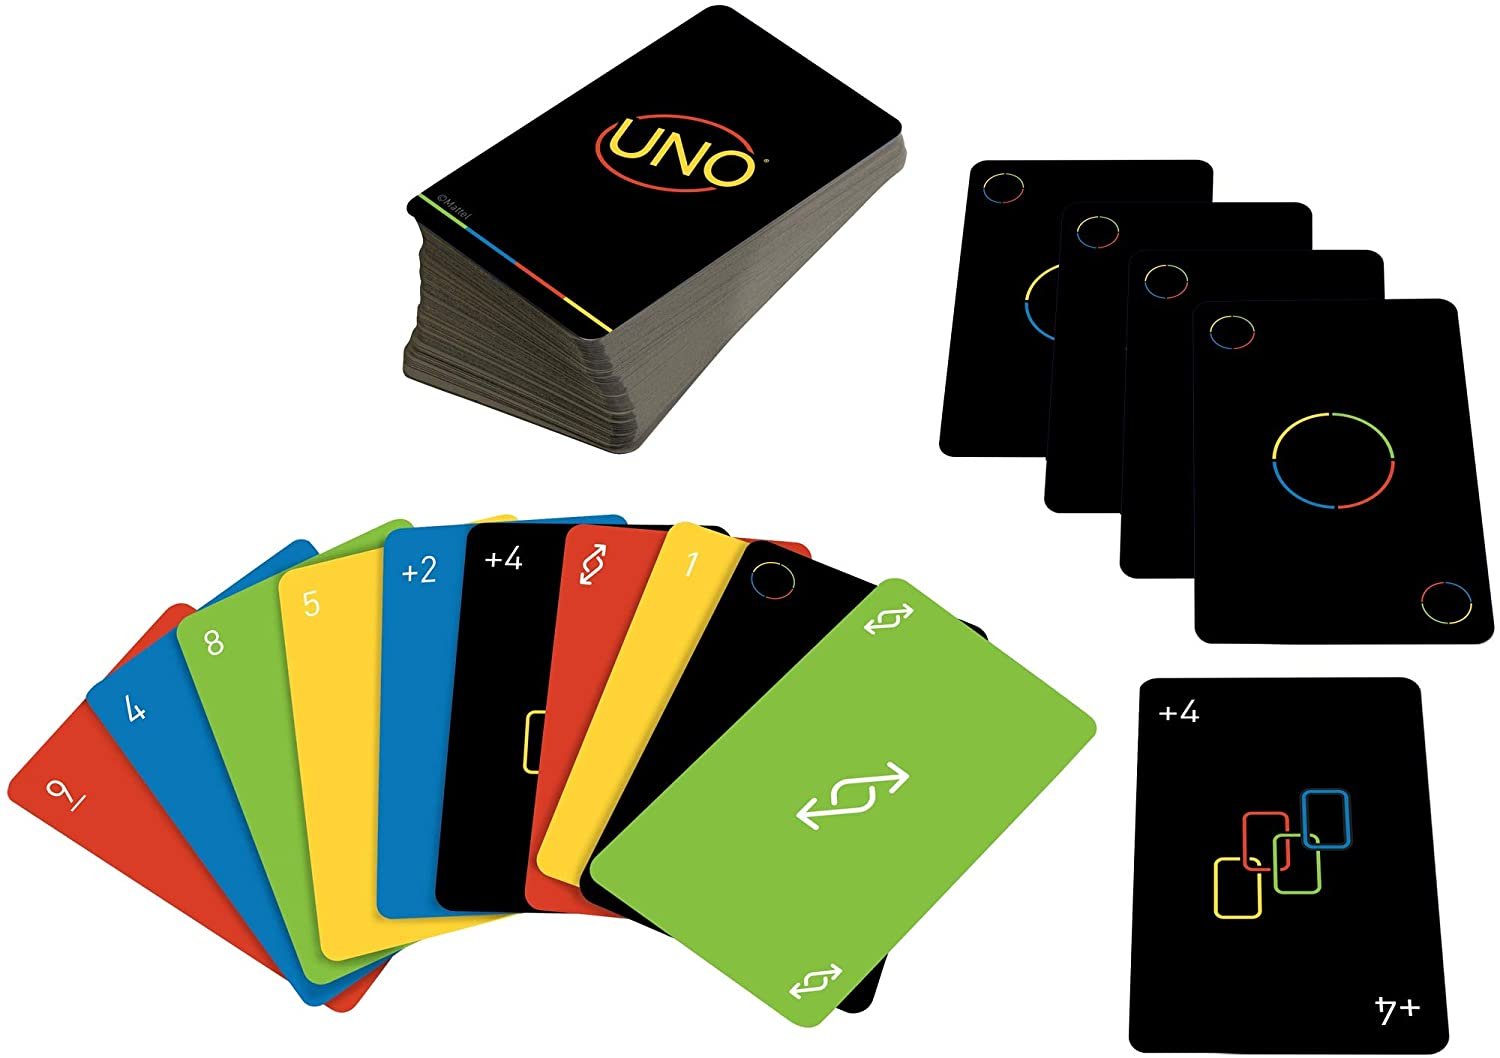 Designer cria novo visual para o jogo de cartas UNO; veja como ficou